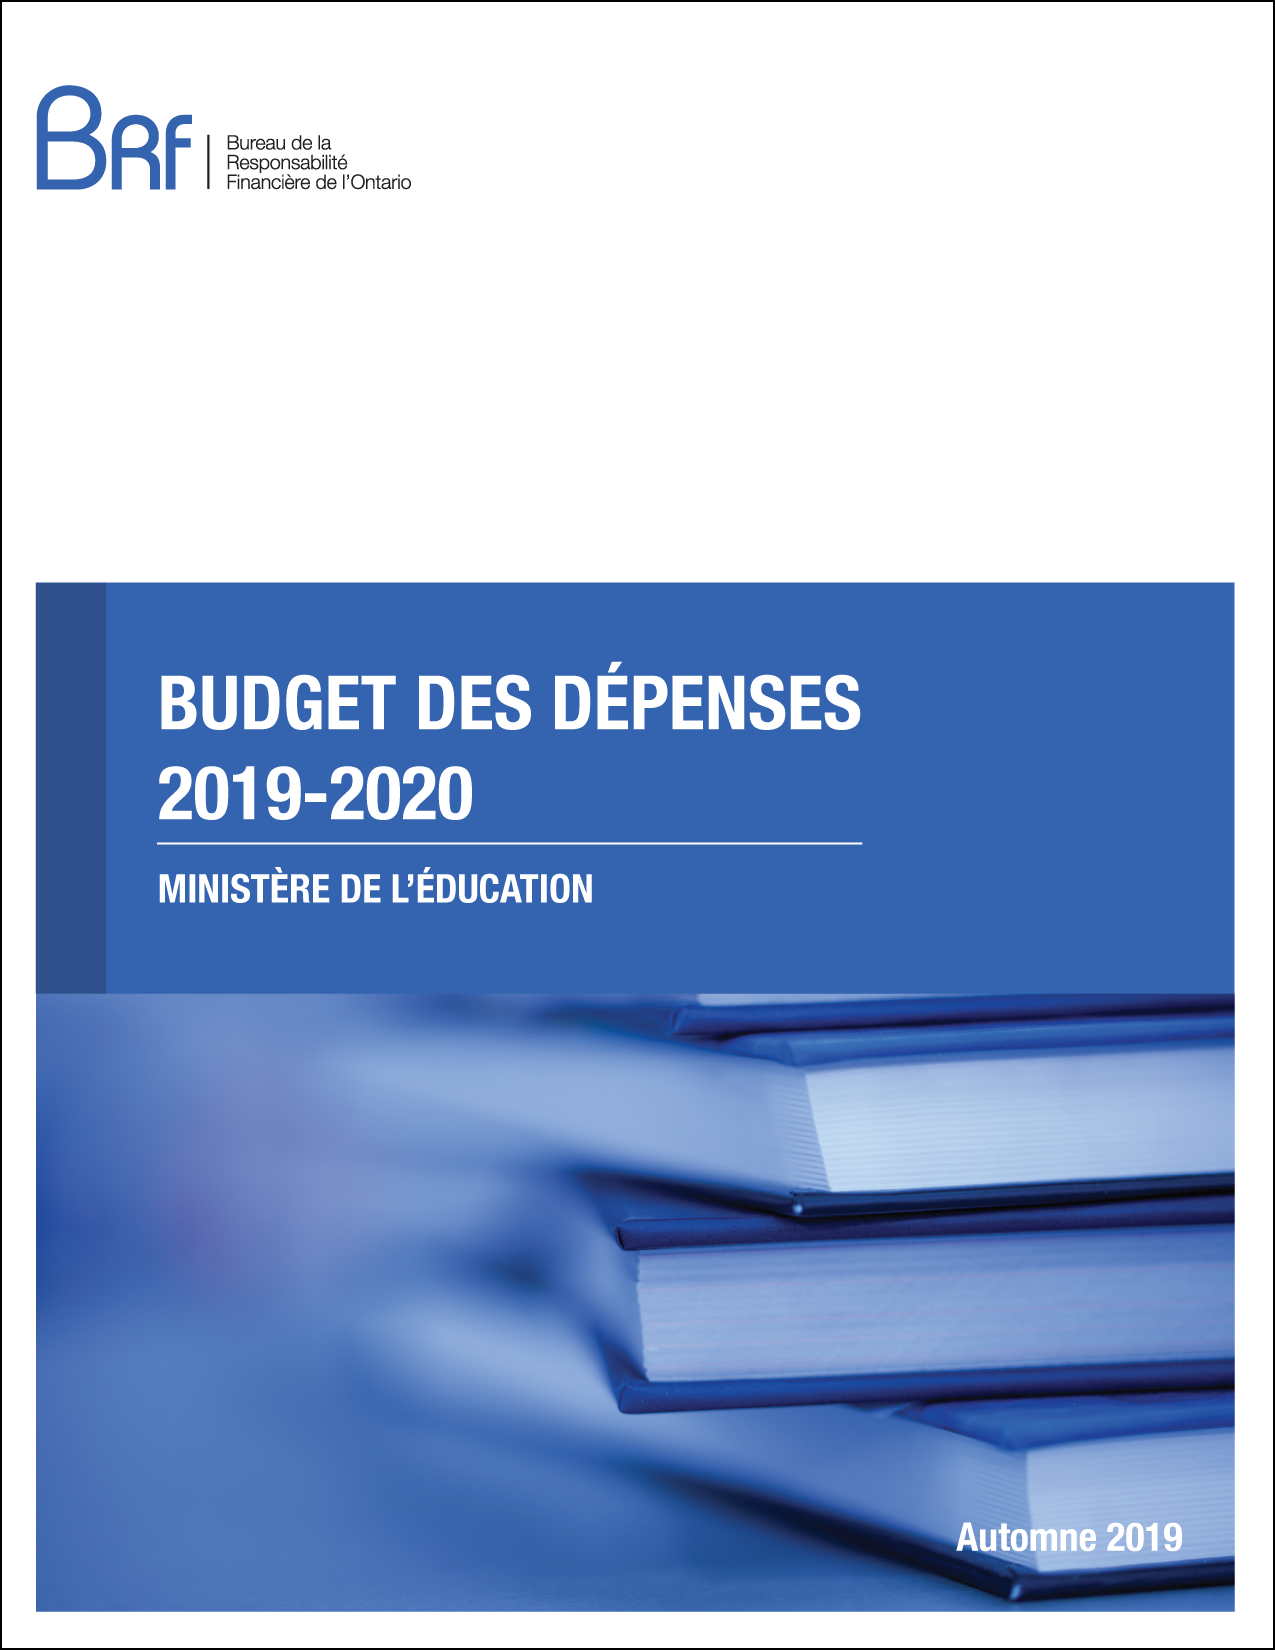 Budget des dépenses 2019-2020 – Ministère de l’Éducation